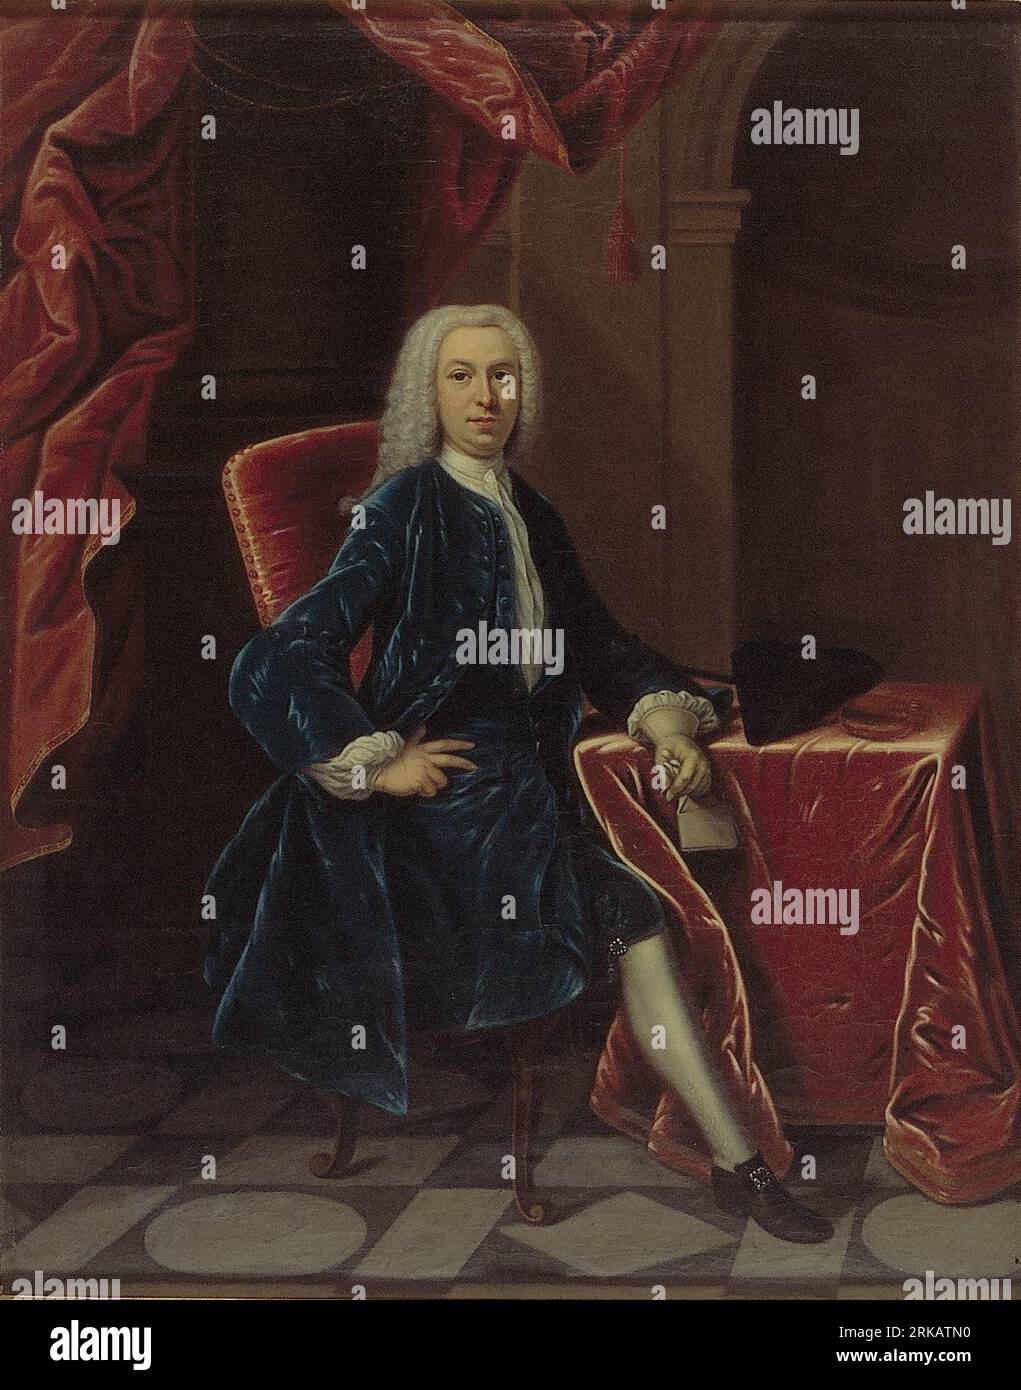 Frans Verschoor (1705-1752) between 1731 and 1752 by Theodorus Caenen Stock Photo